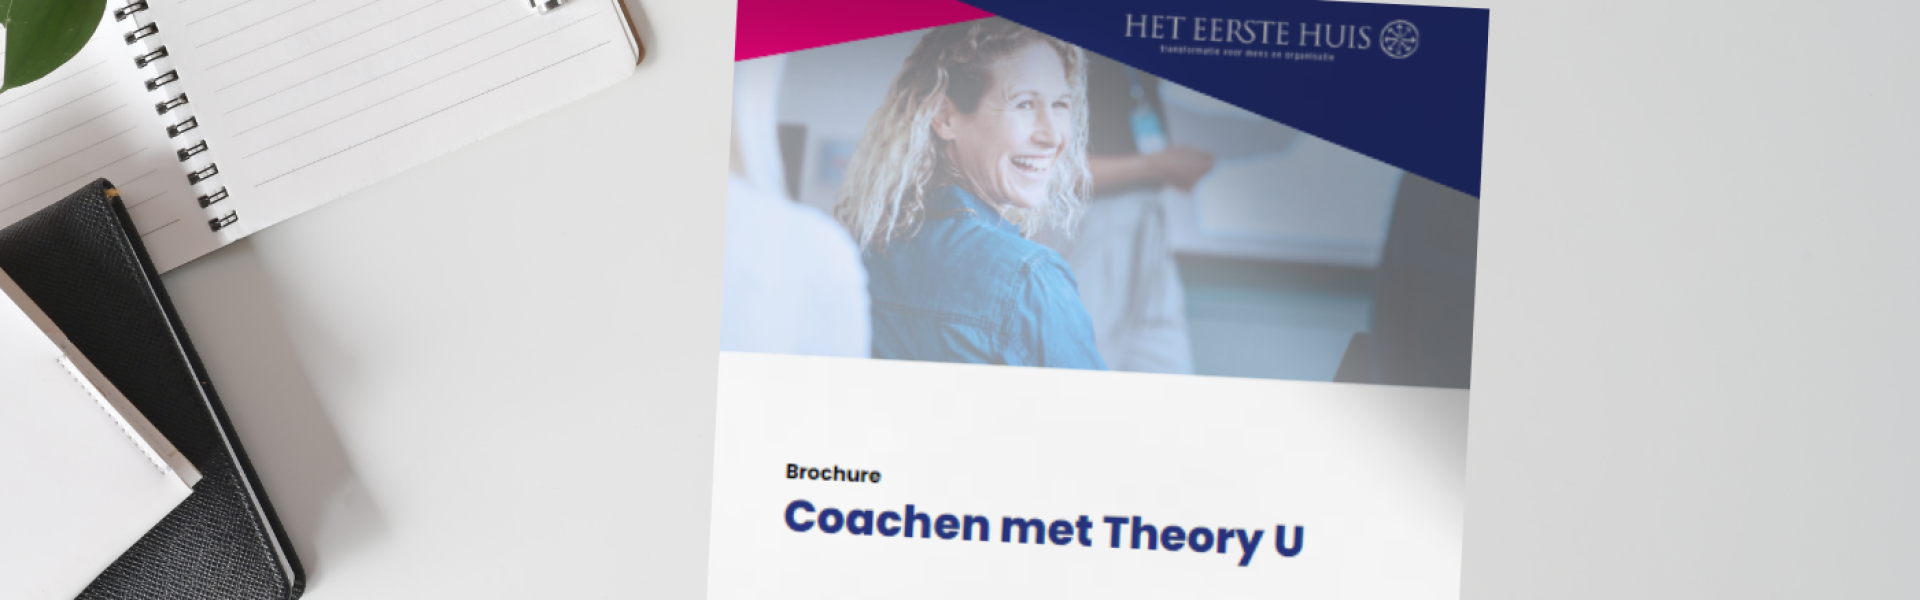 brochure coachen met theory u